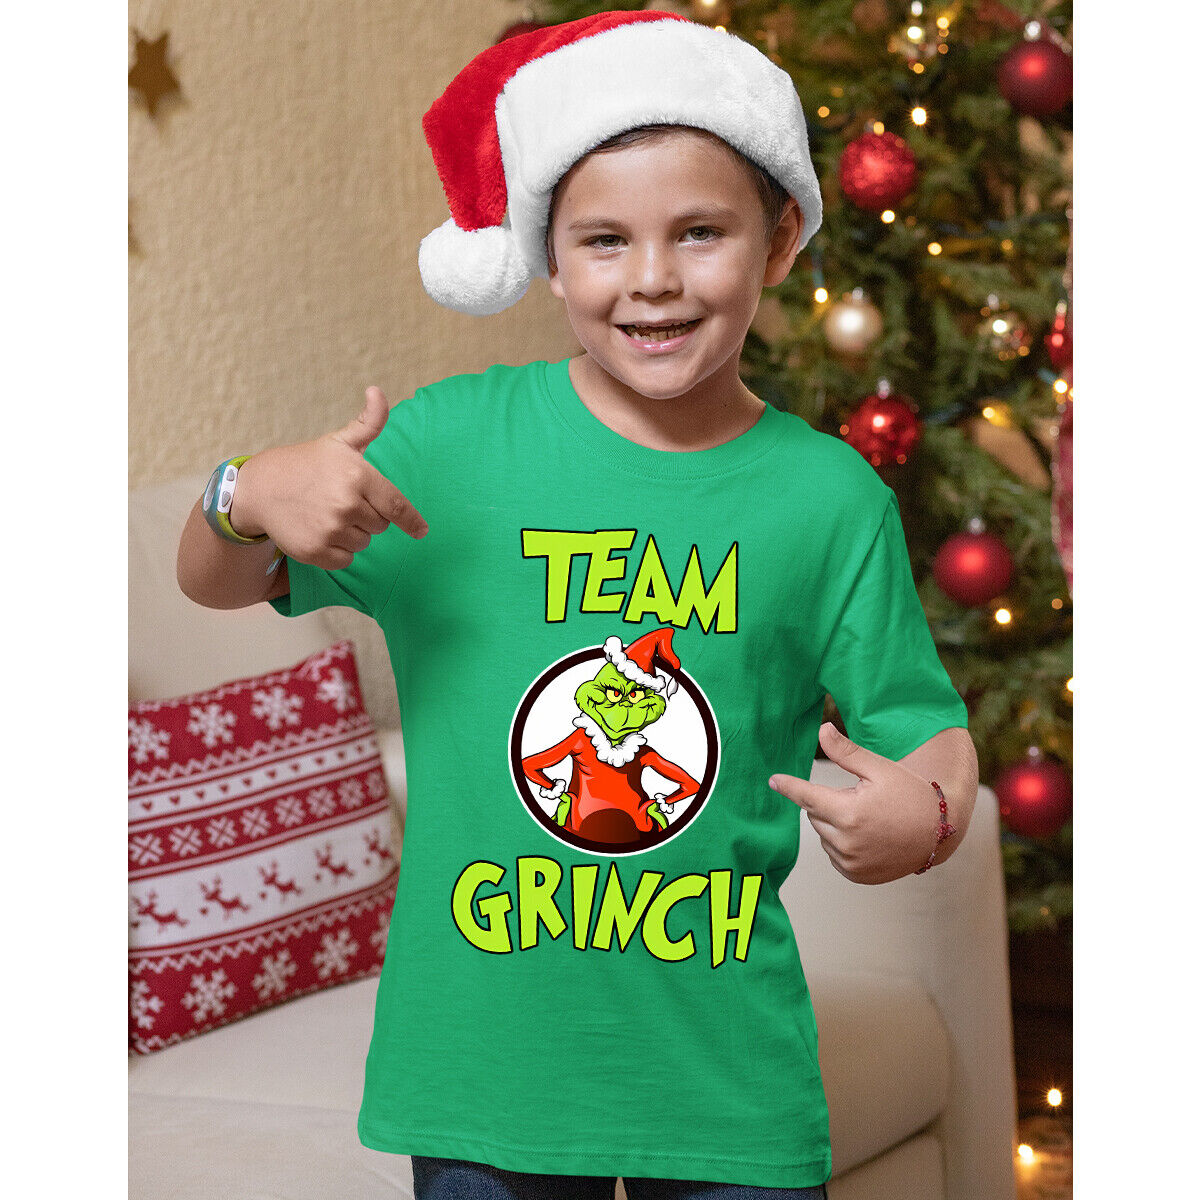 Grinch team vánoční tričko dětské zelené